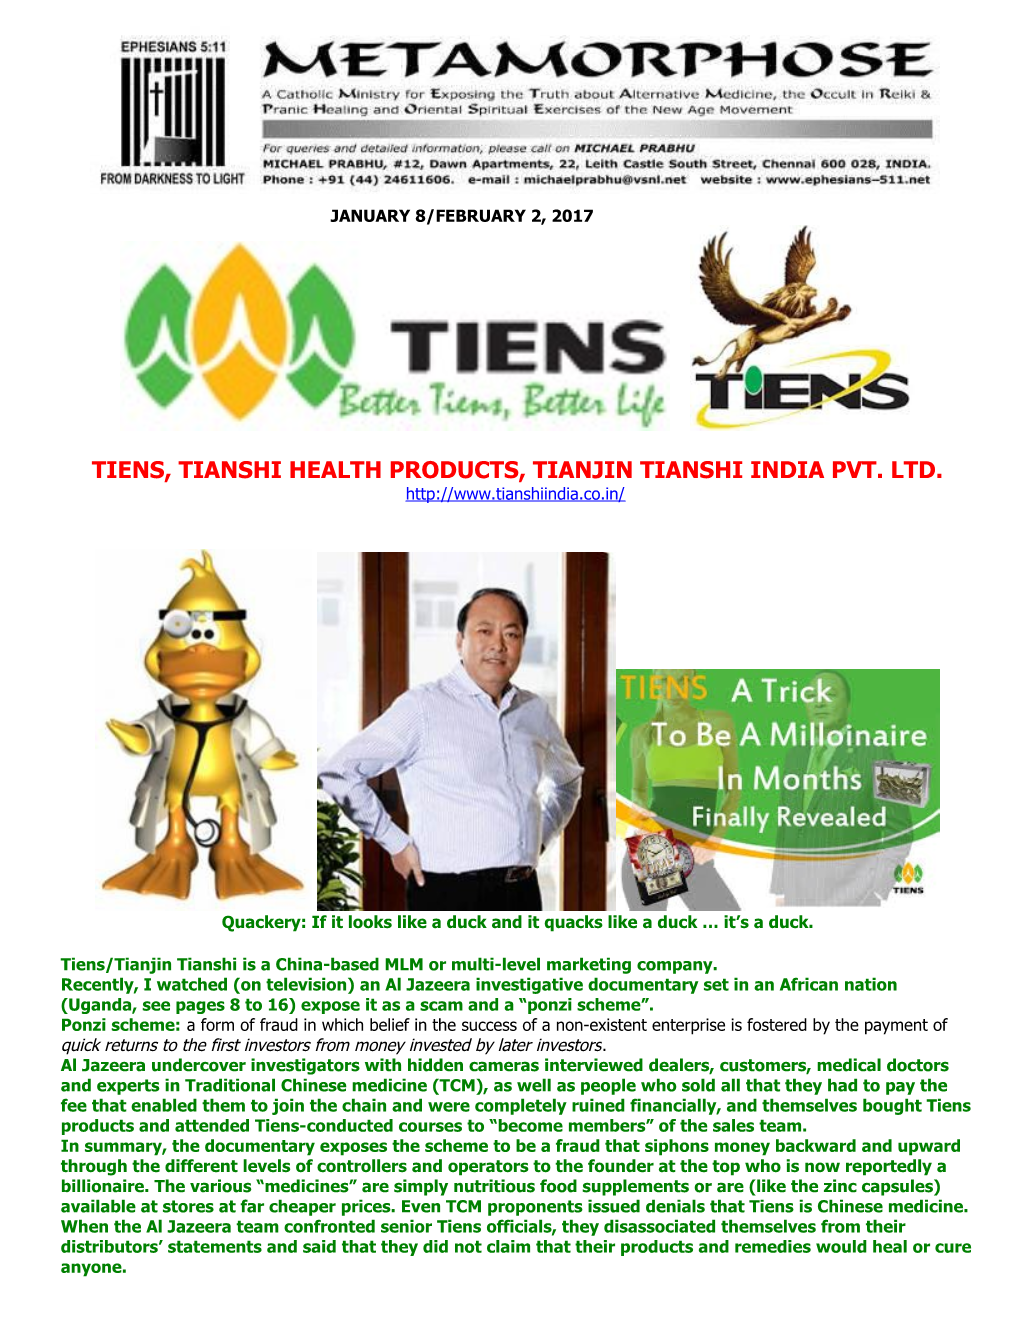 Tiens, Tianshi Health Products, Tianjin Tianshi India Pvt. Ltd